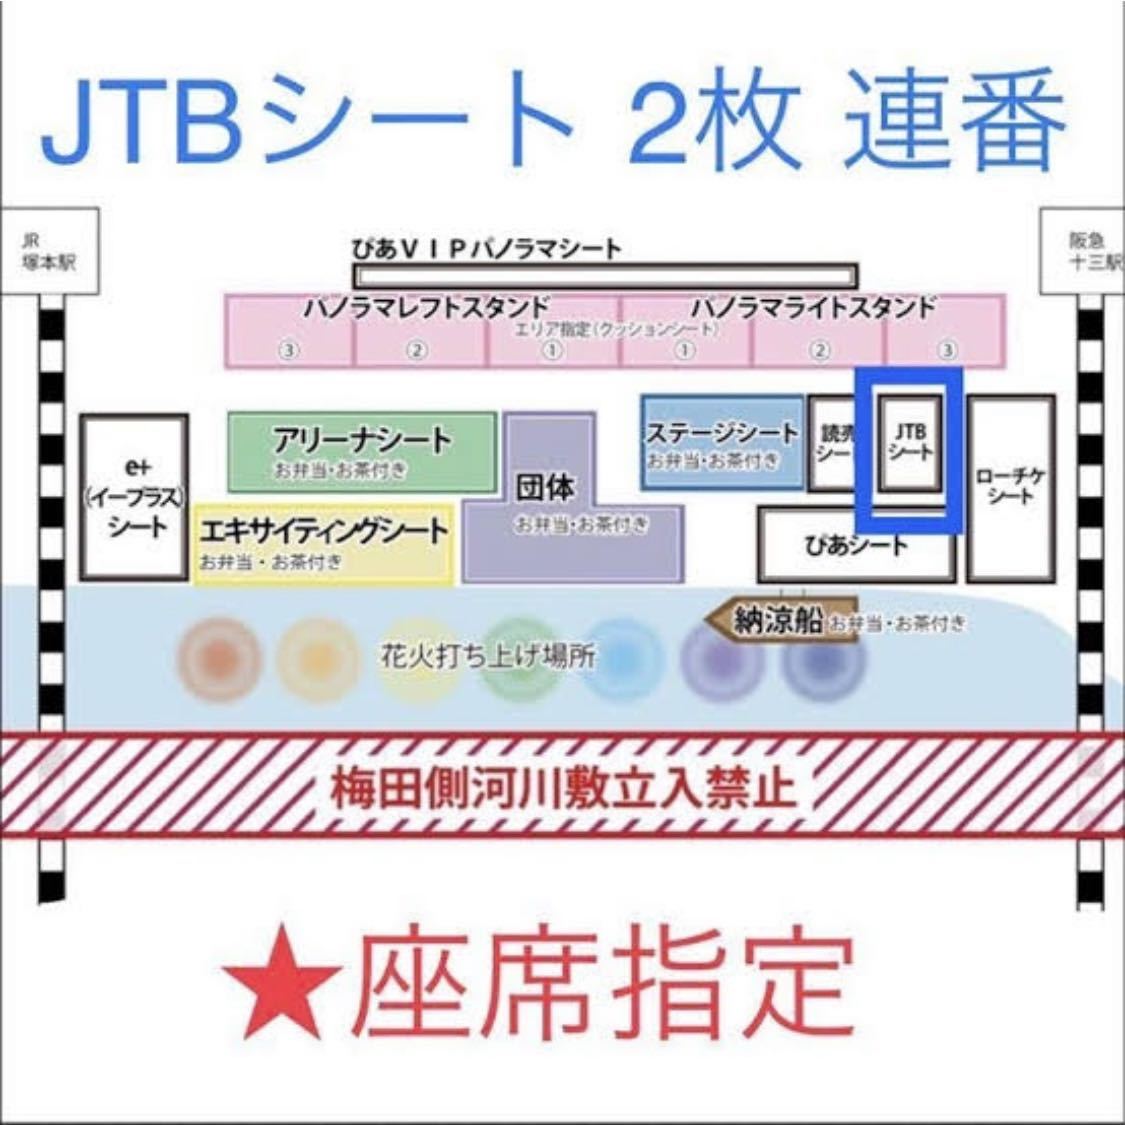 淀川花火大会 JTBシート 2枚 連番 チケット ☆ 座席指定☆ - イベント